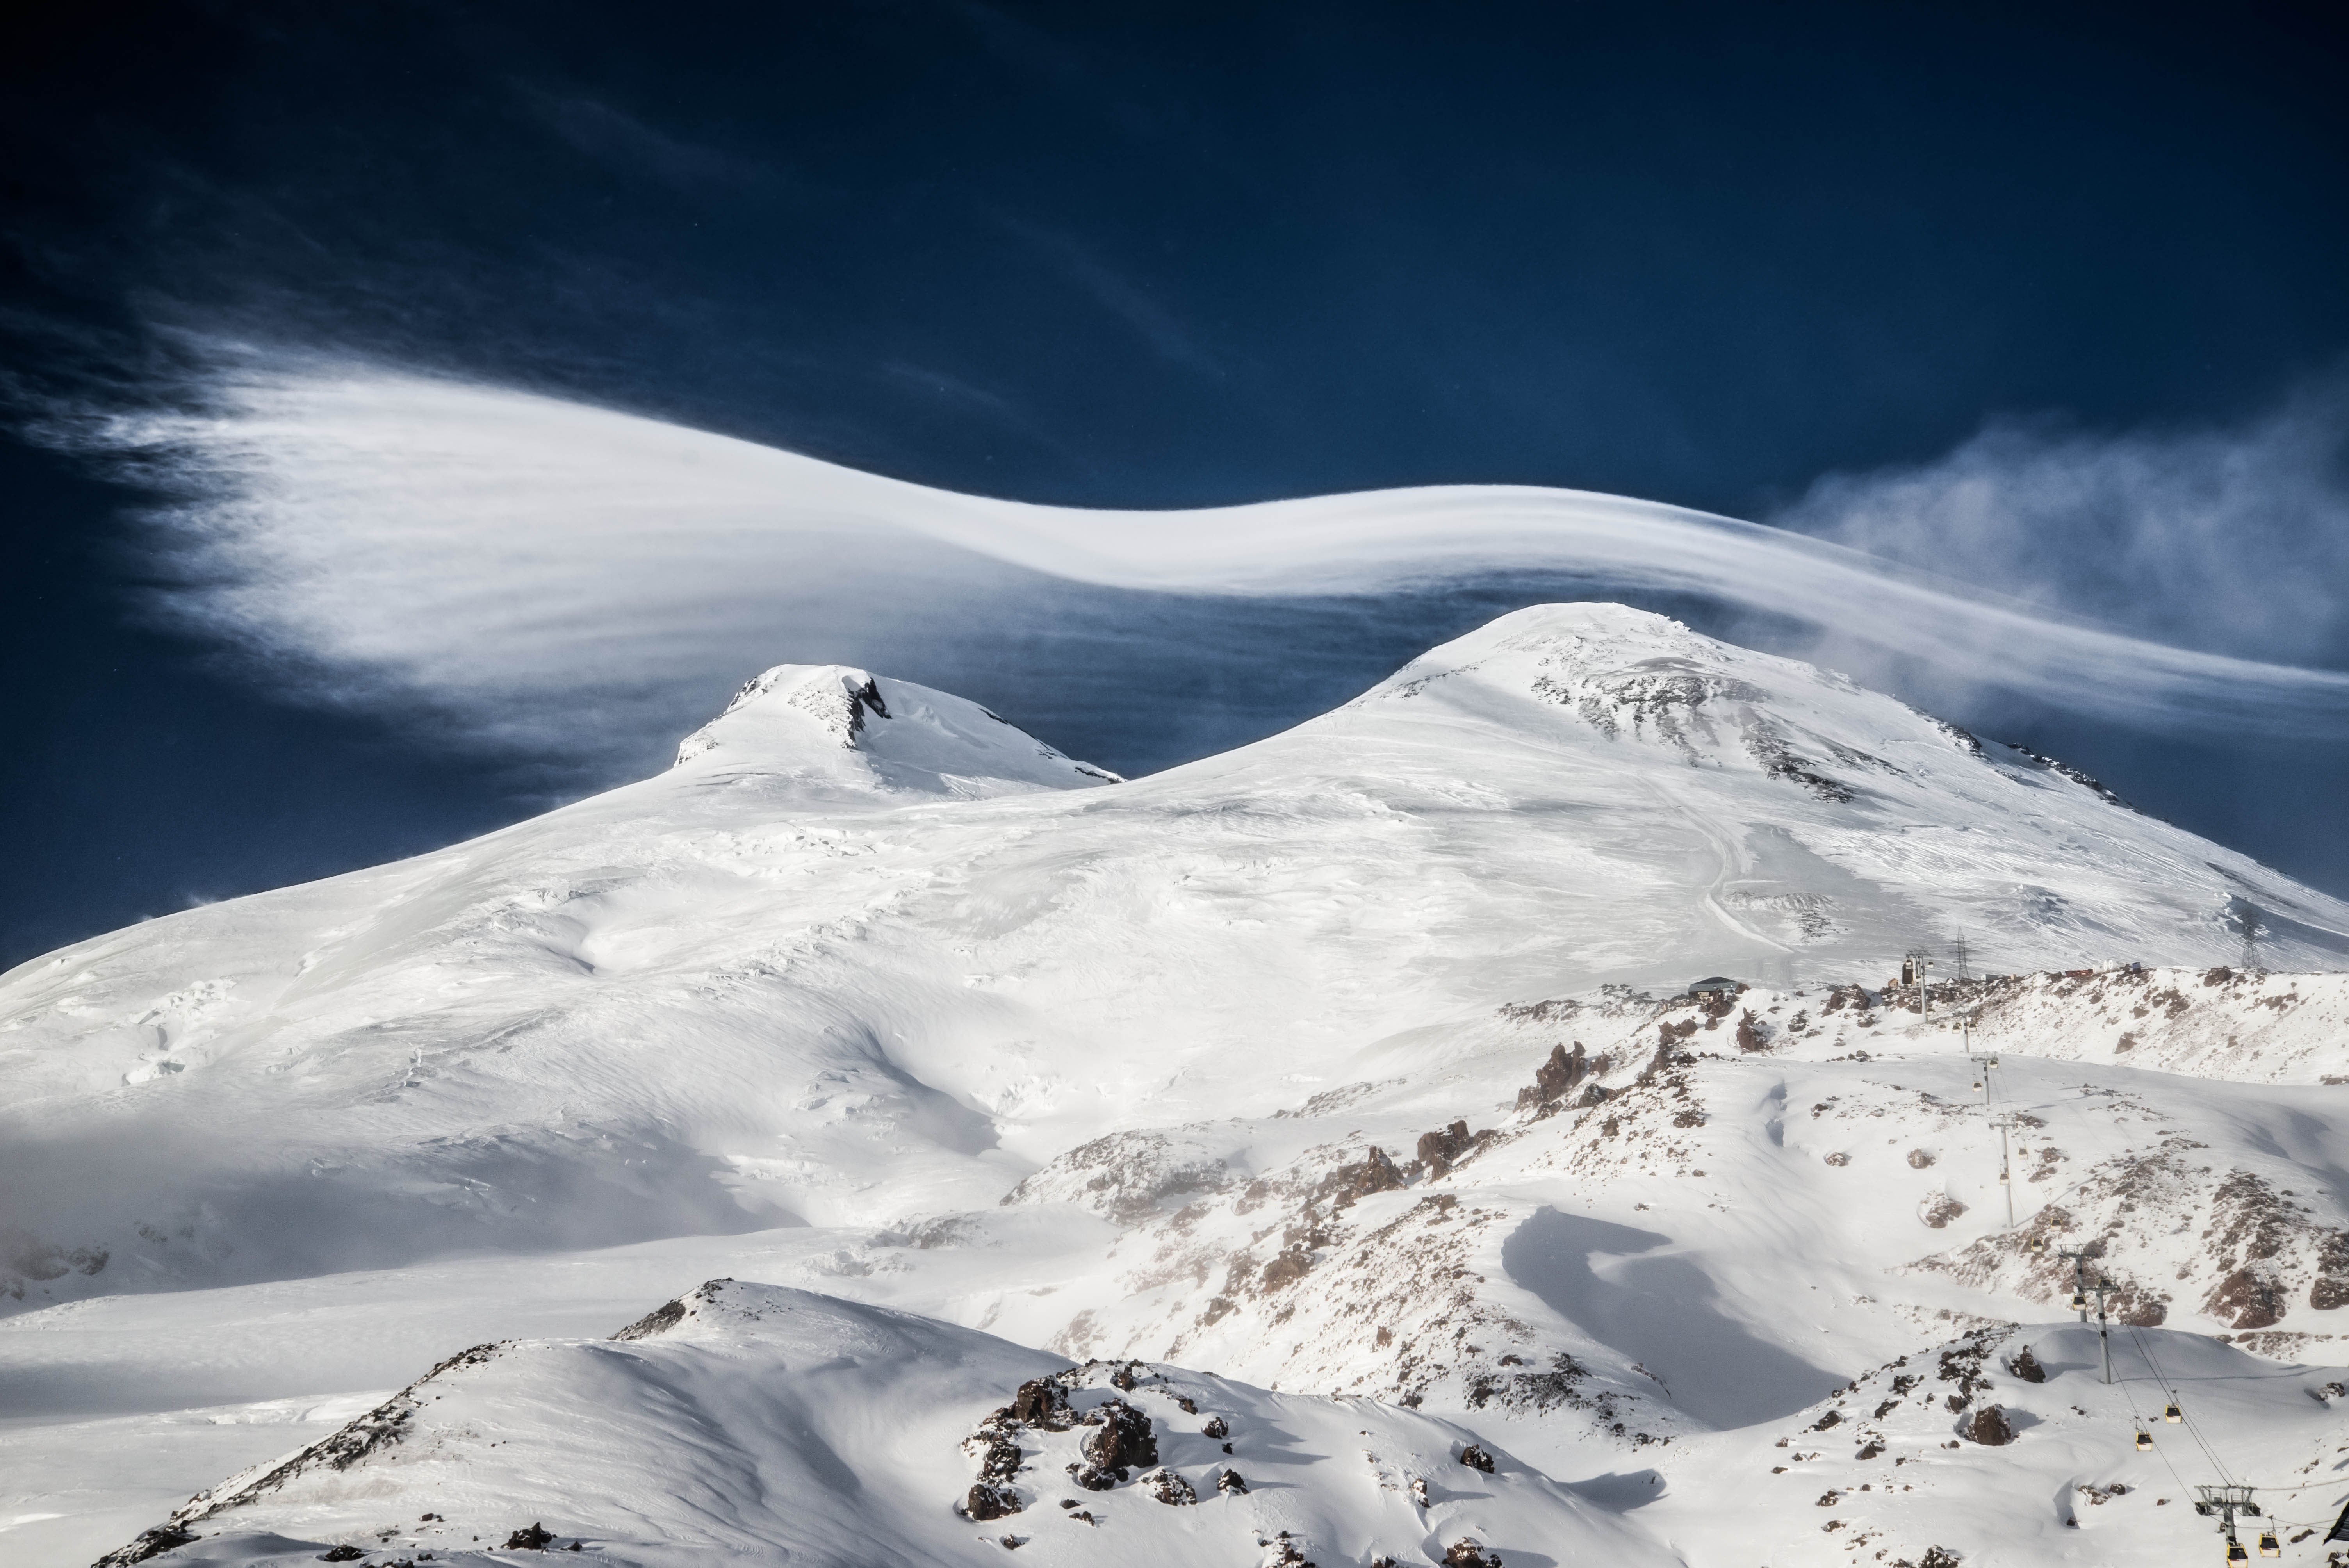 эльбрус кавказ горы зима облака лентикулярные пейзаж путешествие travel nature landscape caucasus elbrus mountains, Егор Бугримов